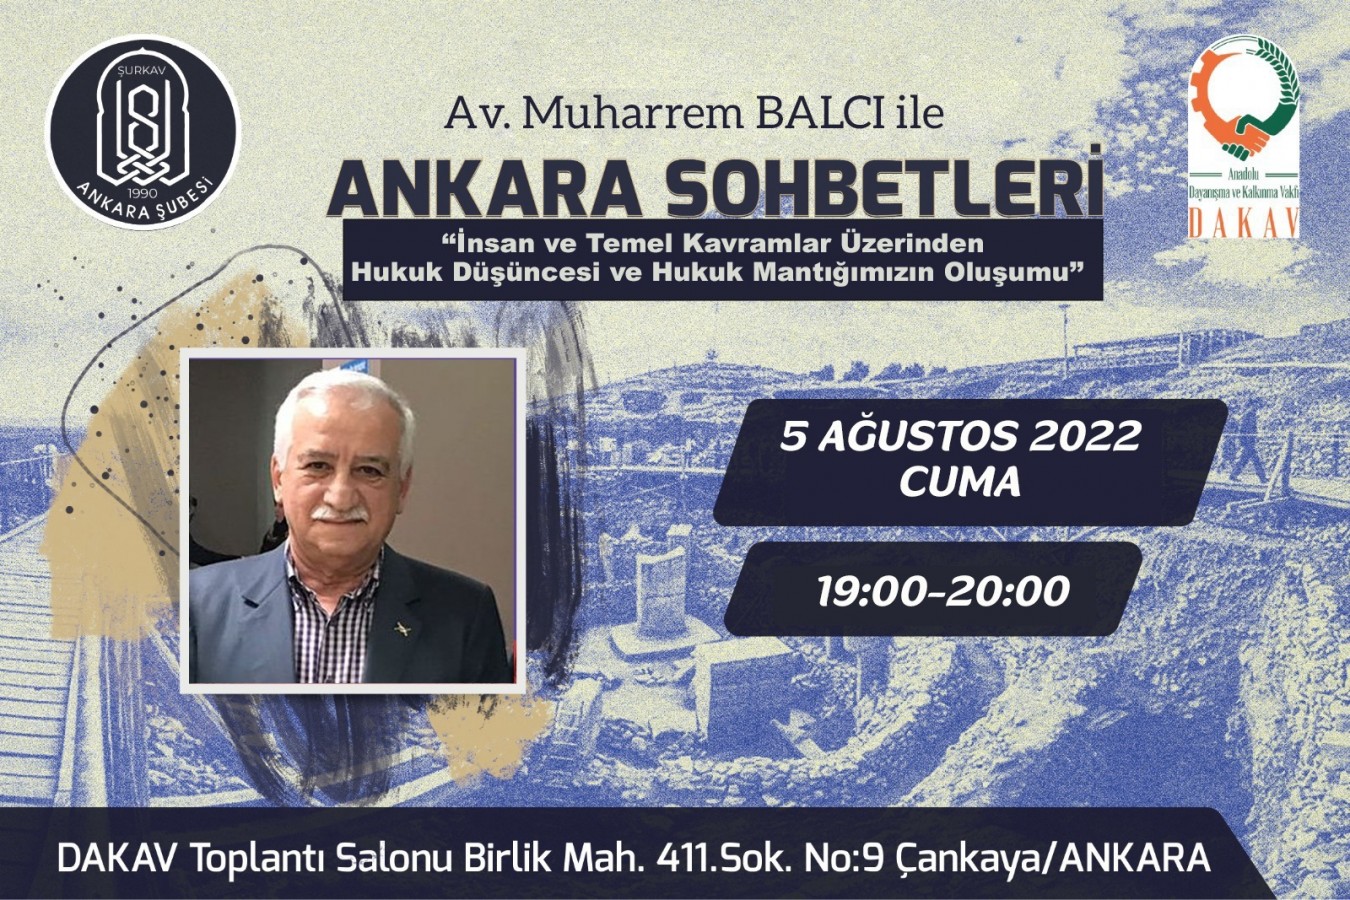 “Ankara Sohbetleri” etkinliğine başkentteki tüm Urfalılar davet edildi